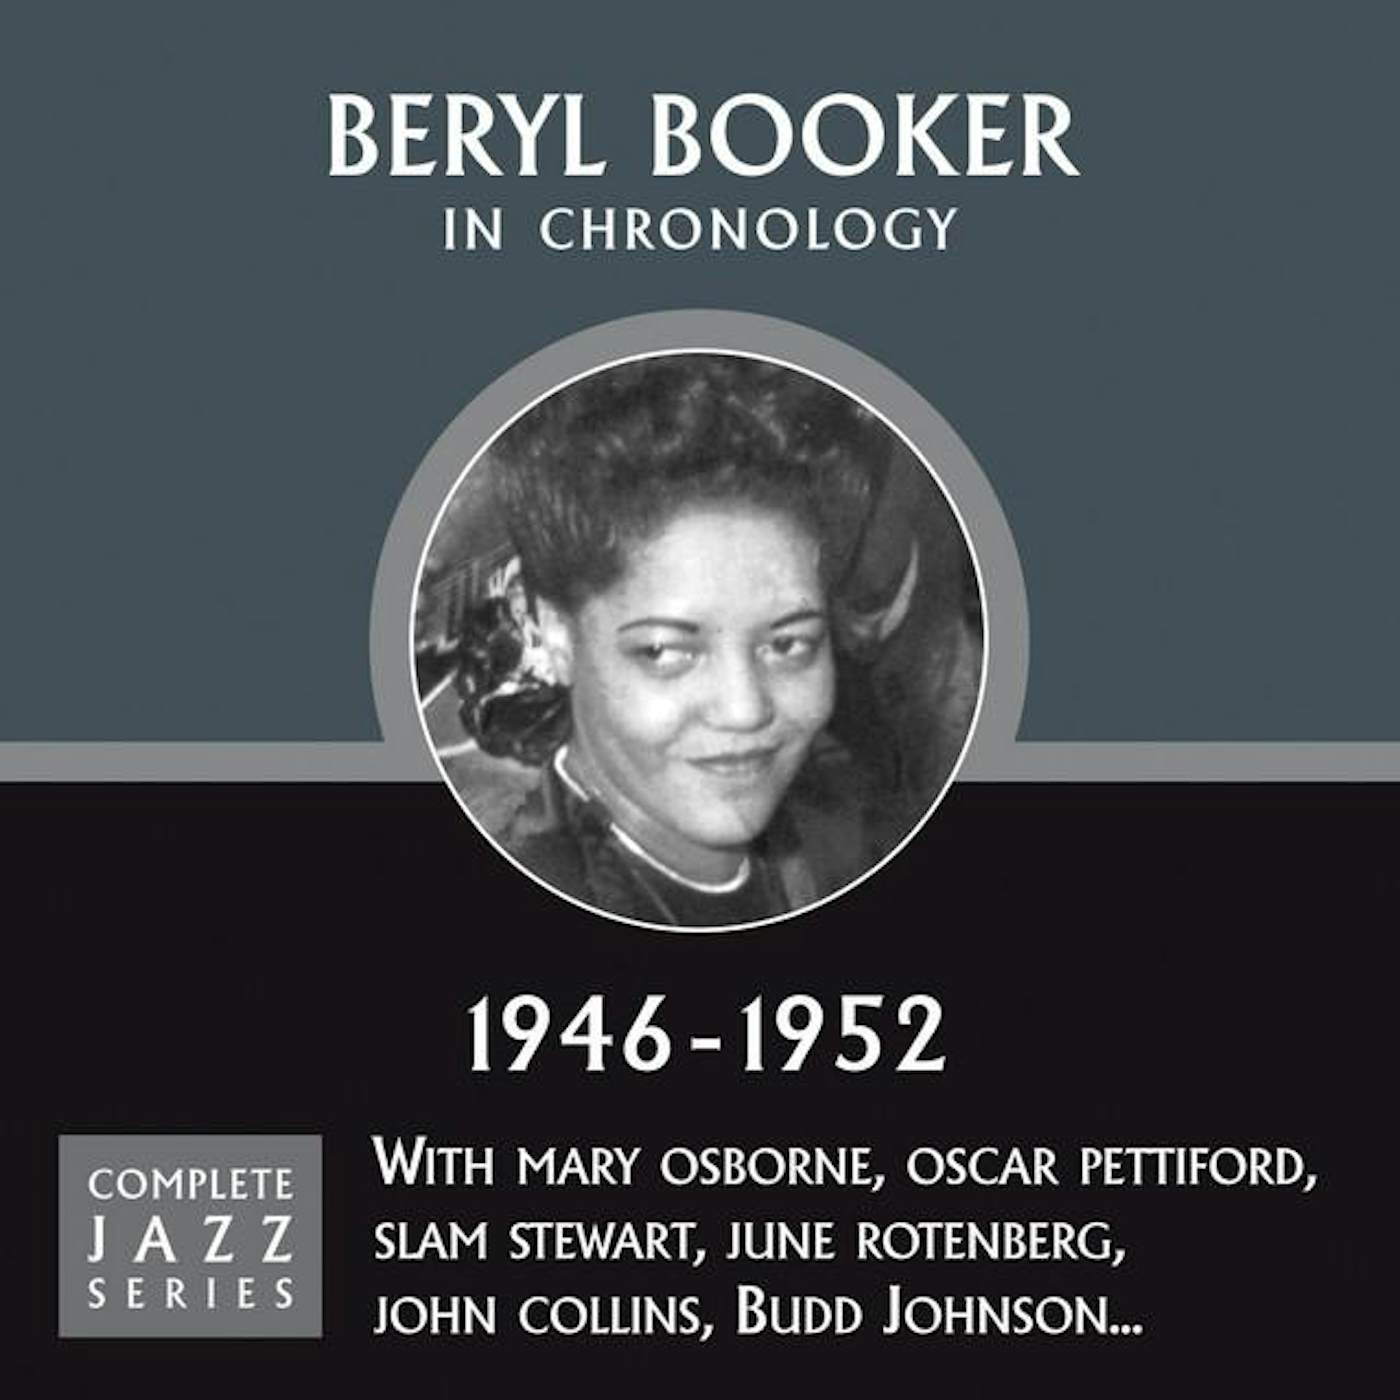 Beryl Booker